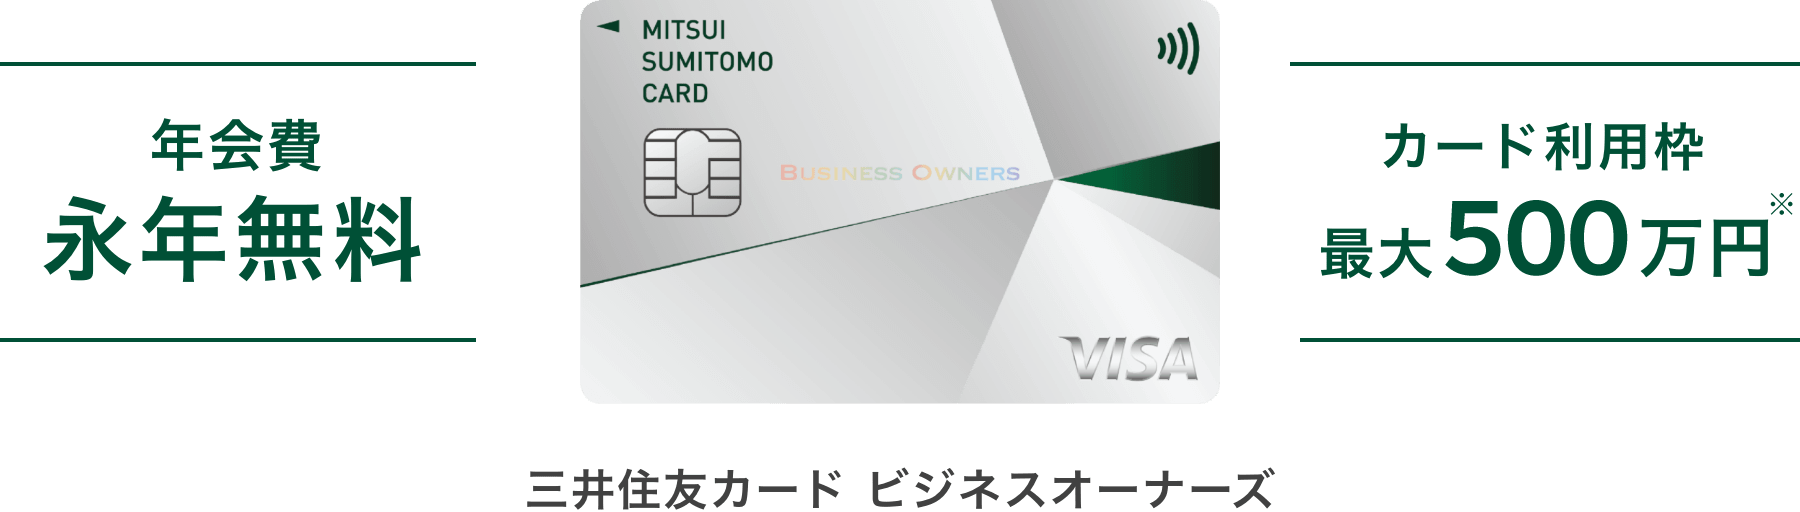 年会費 永年無料 カード利用枠 最大500万円 三井住友カード ビジネスオーナーズ